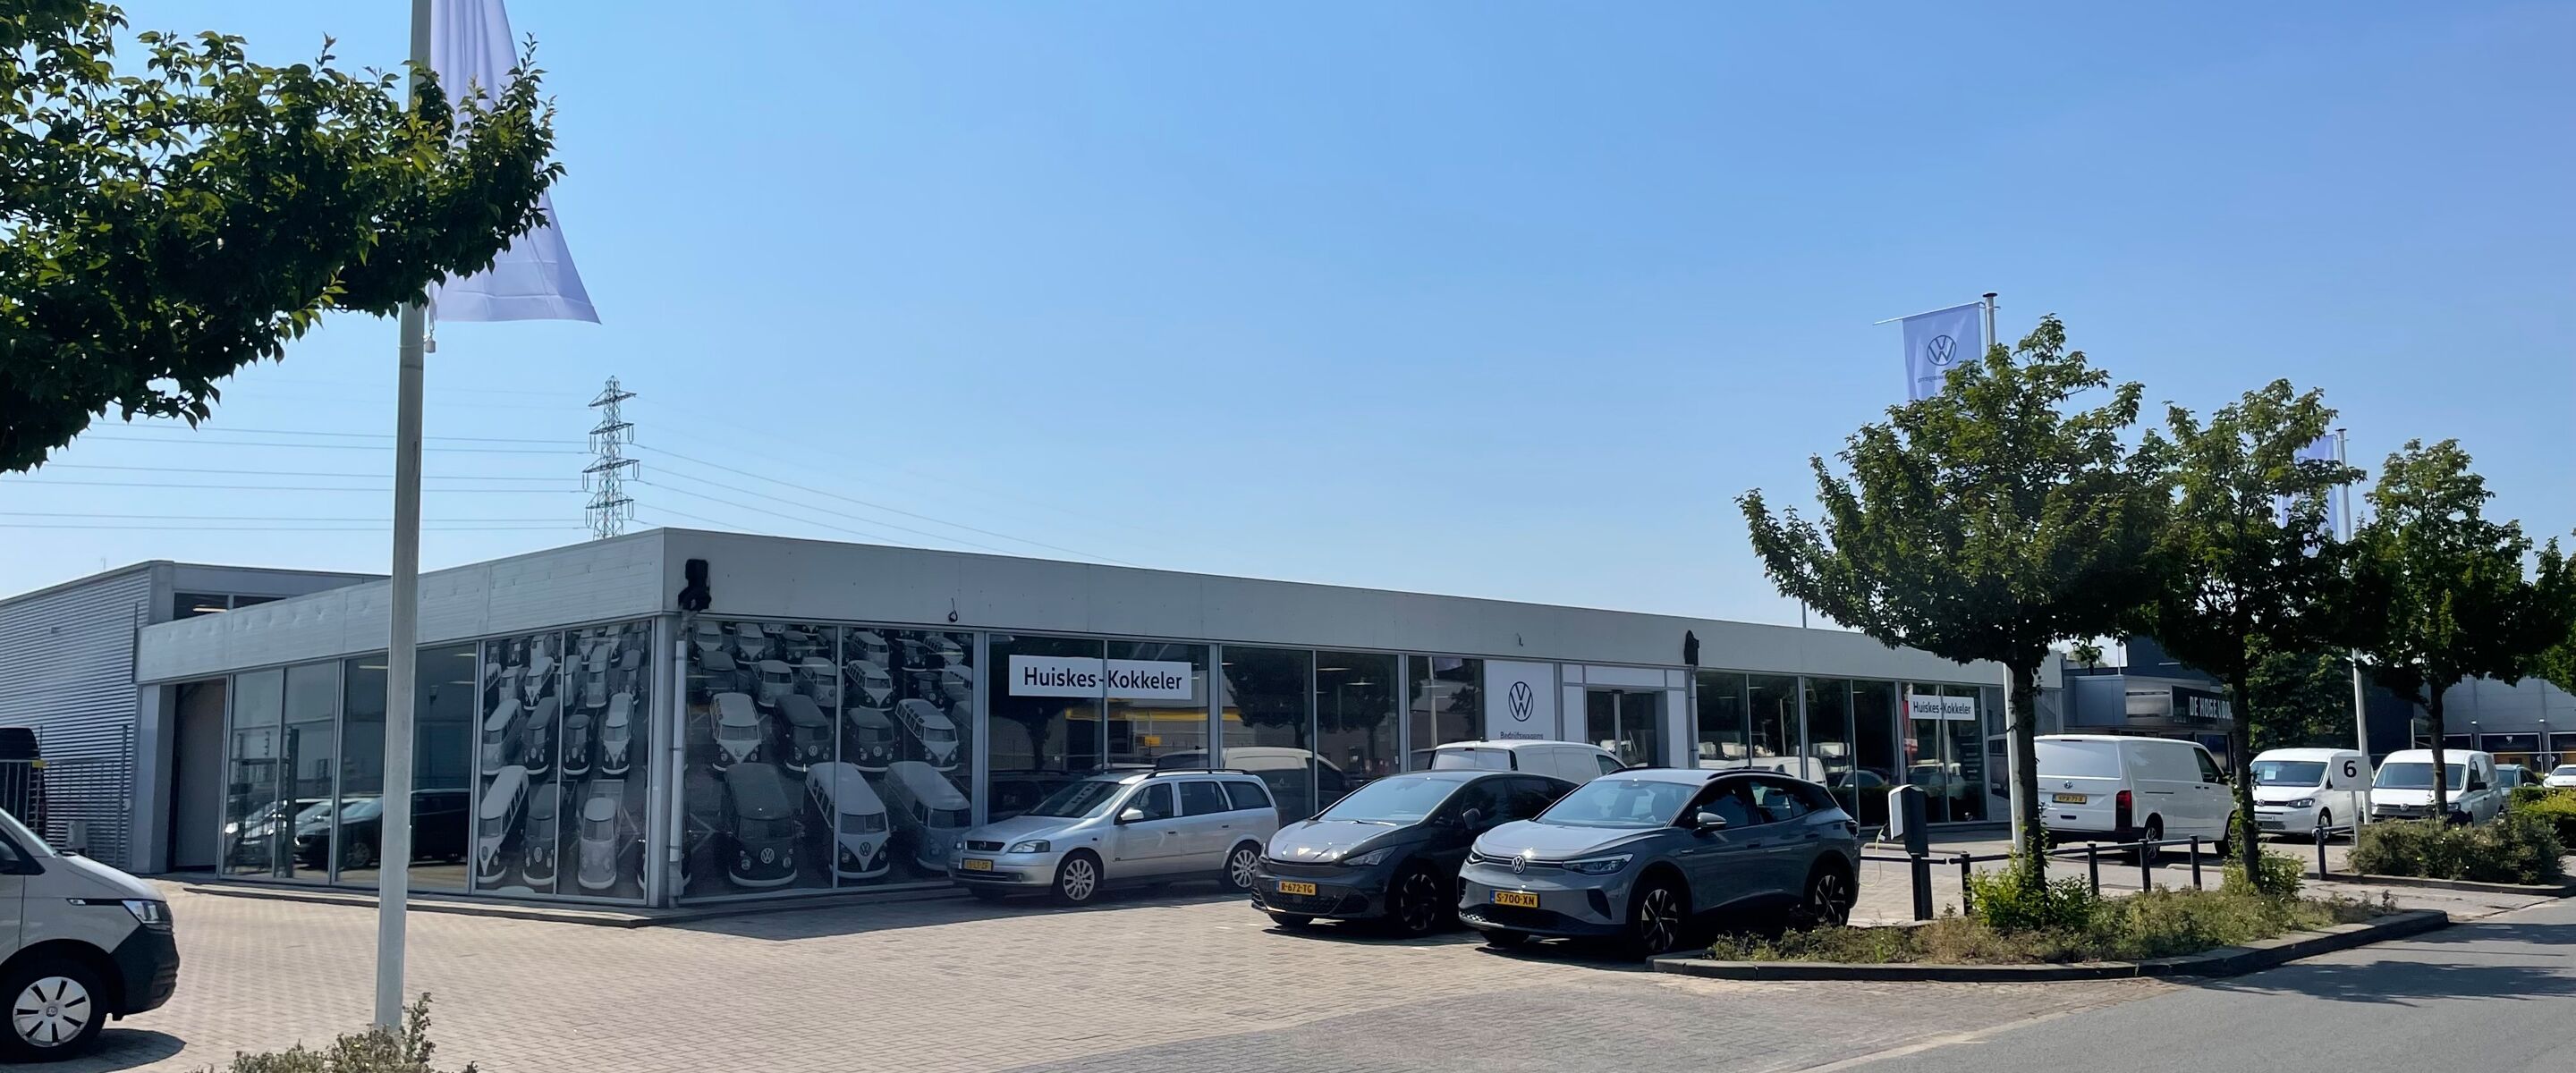 Ons Bedrijfswagens-centrum in Doetinchem is (tijdelijk) verhuisd!